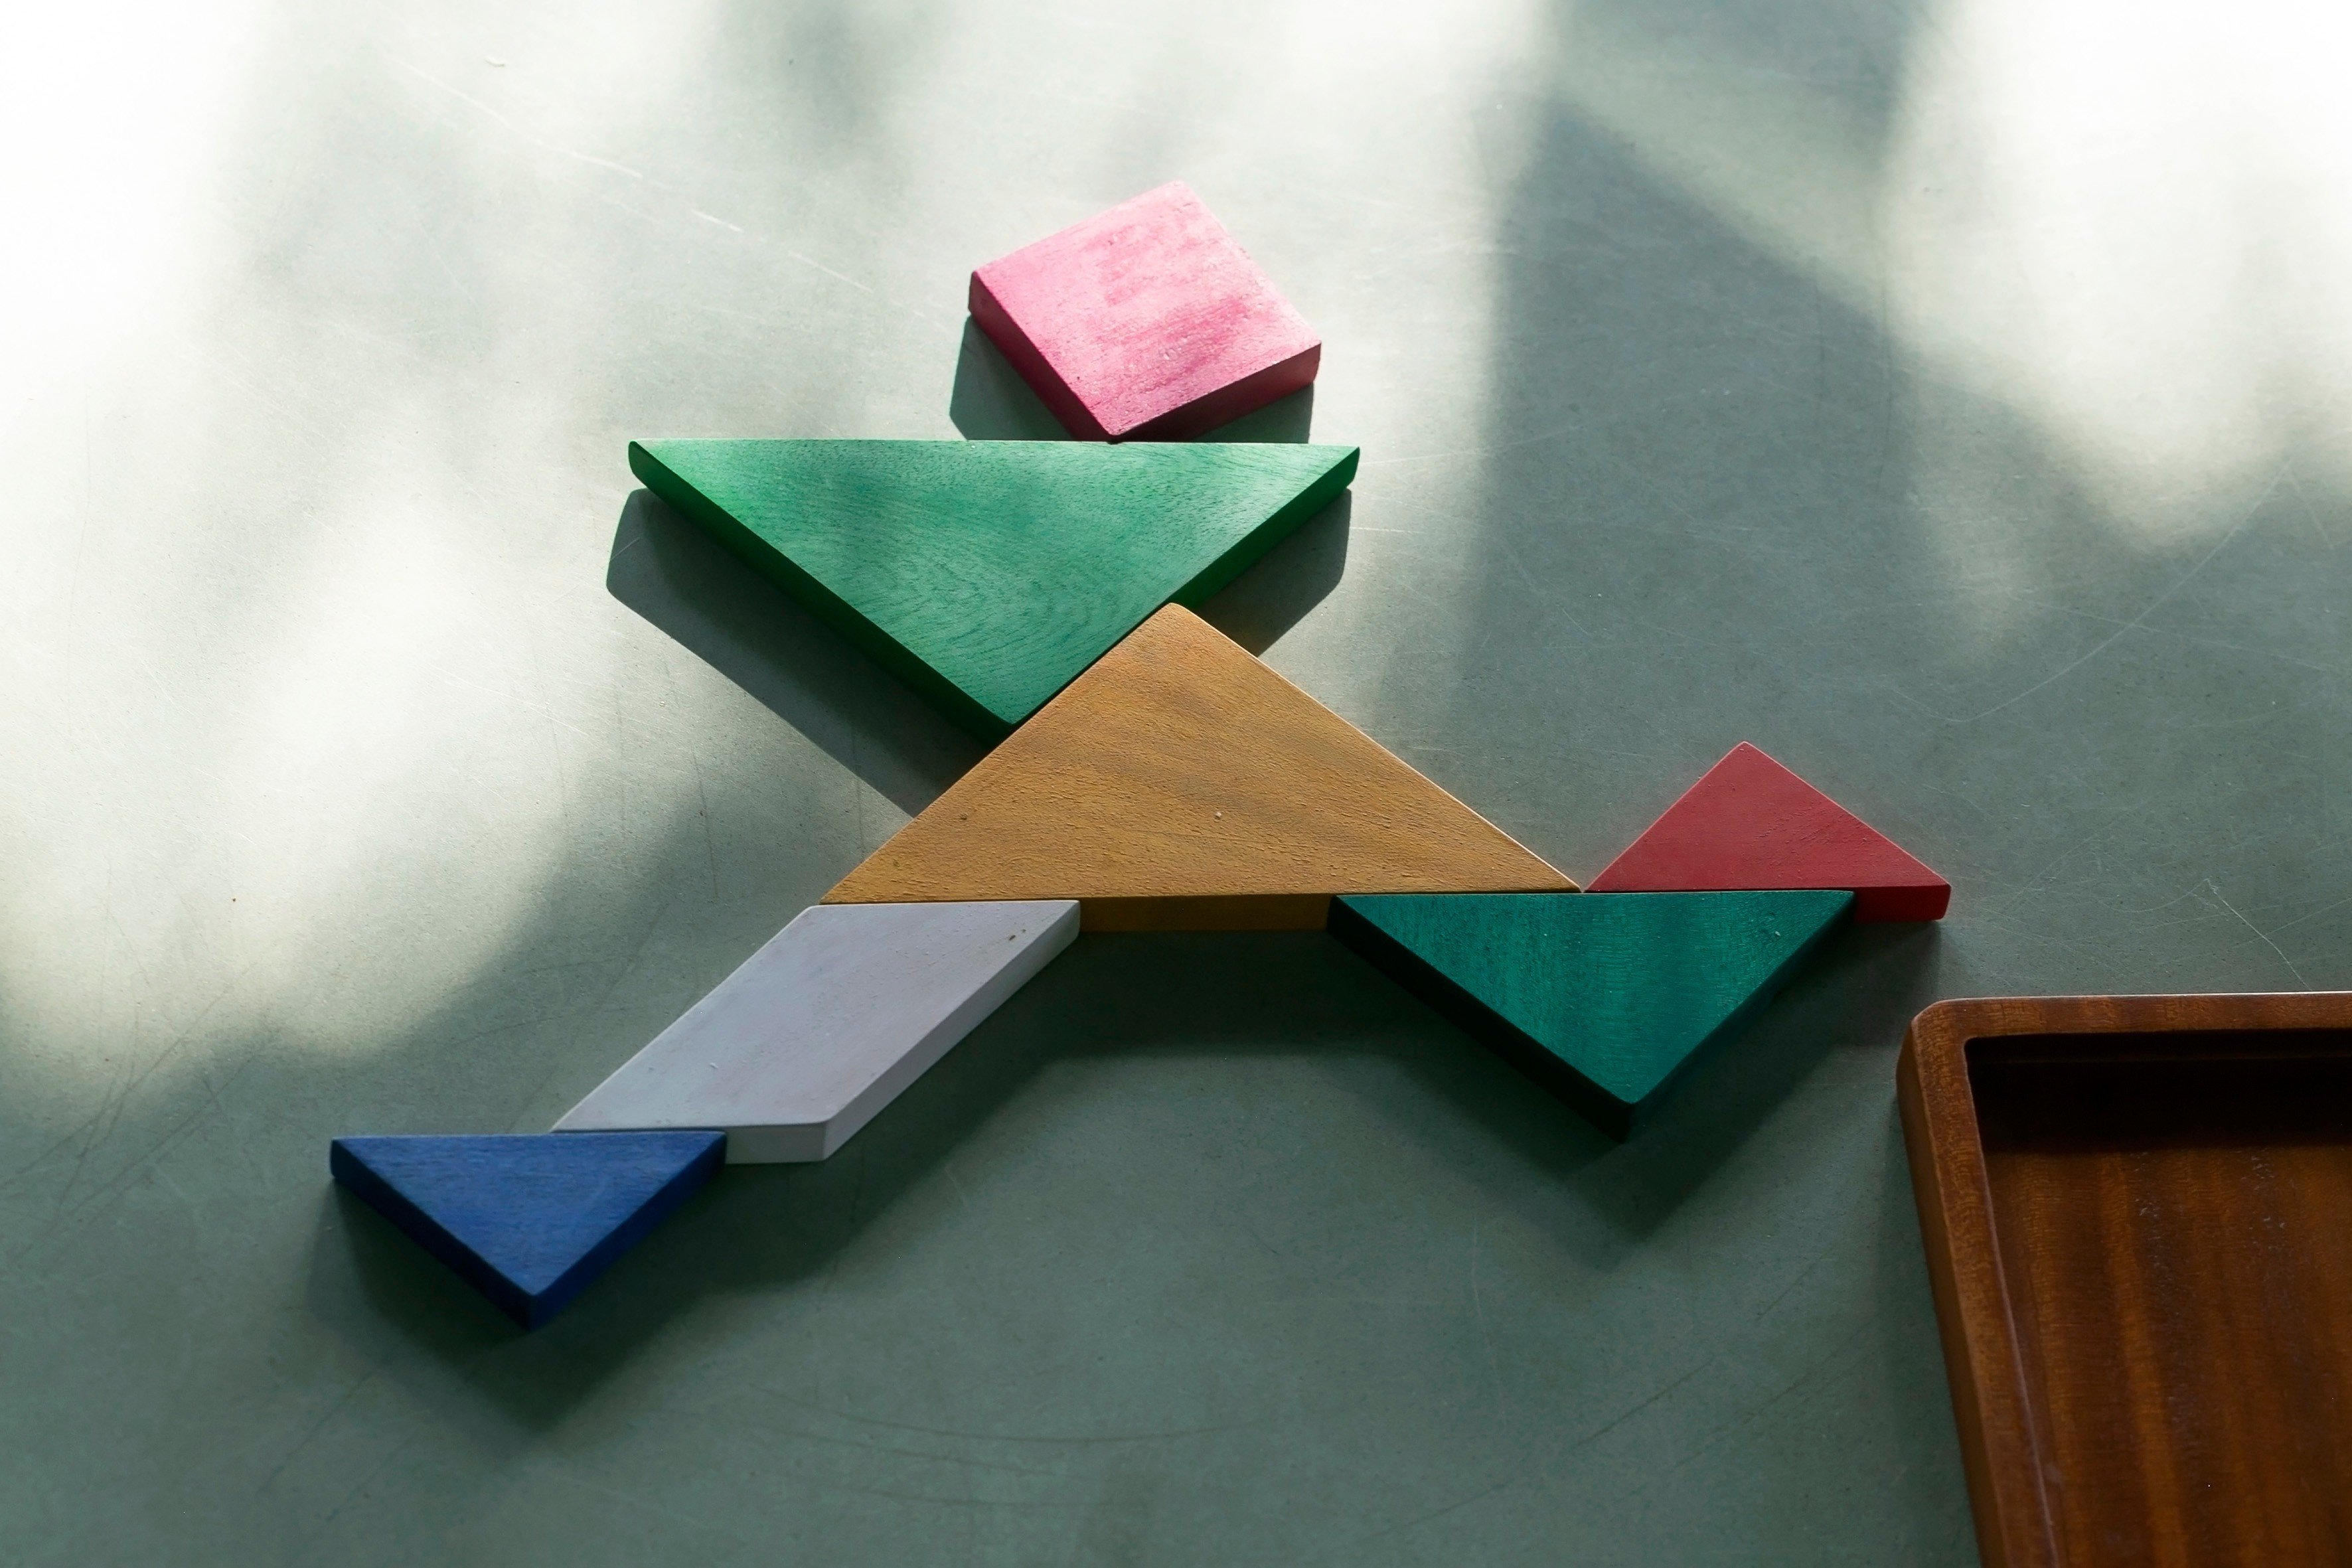 [Puzzle - Smart toy] Bộ xếp hình gỗ rèn luyện khả năng tưởng tượng và sáng tạo - Trí Uẩn - hình vuông 7 mảnh/ Square tangram 7 pieces (Đồ chơi gỗ)